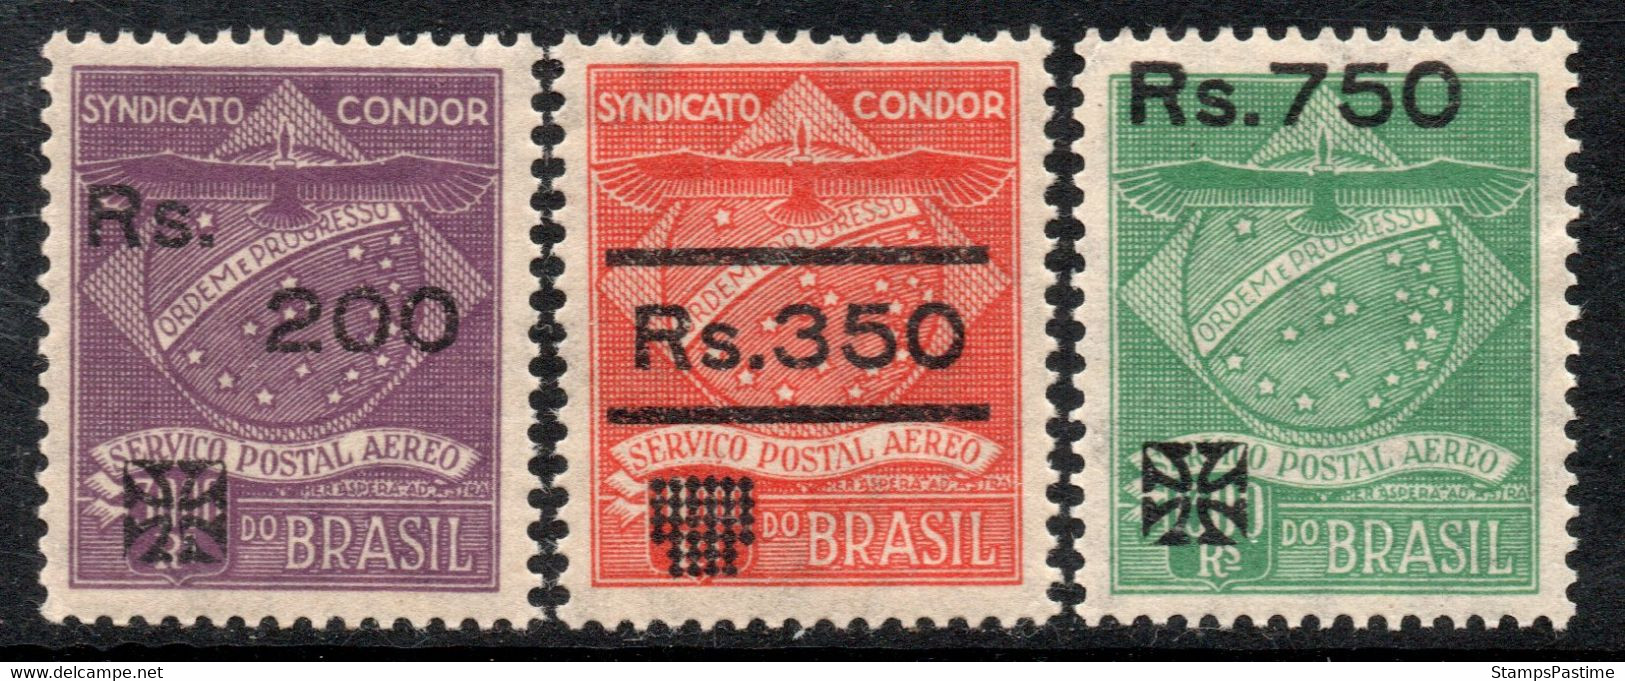 BRASIL – BRAZIL Rara Serie X 3 Sellos Mint COMPAÑÍA CÓNDOR REVALORIZADOS Año 1930 – Valorizados En Catálogo € 24,00 - Aéreo (empresas Privadas)